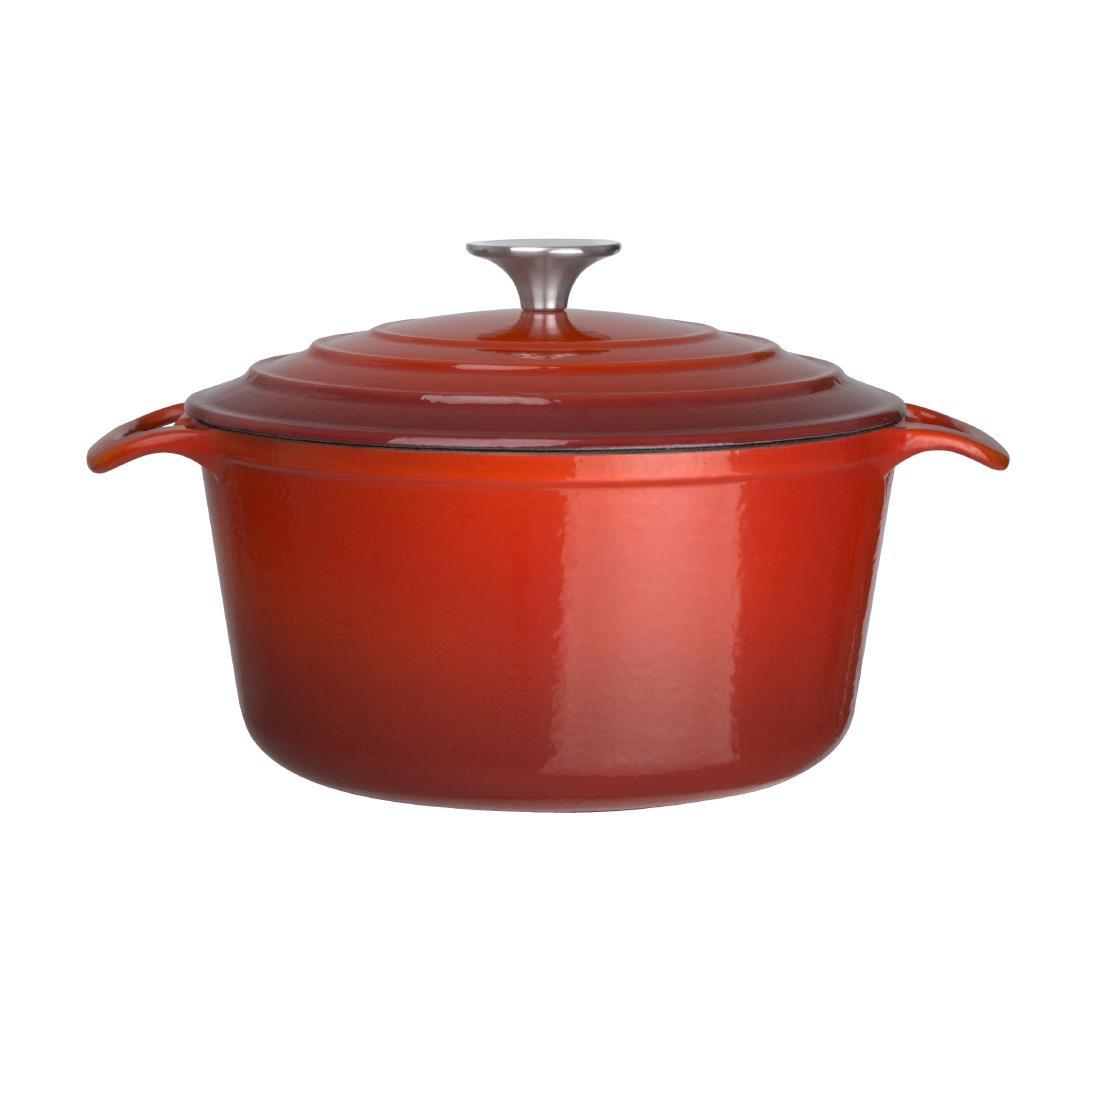 Vogue Red Round Casserole Dish 3.2Ltr - GH304  - 2